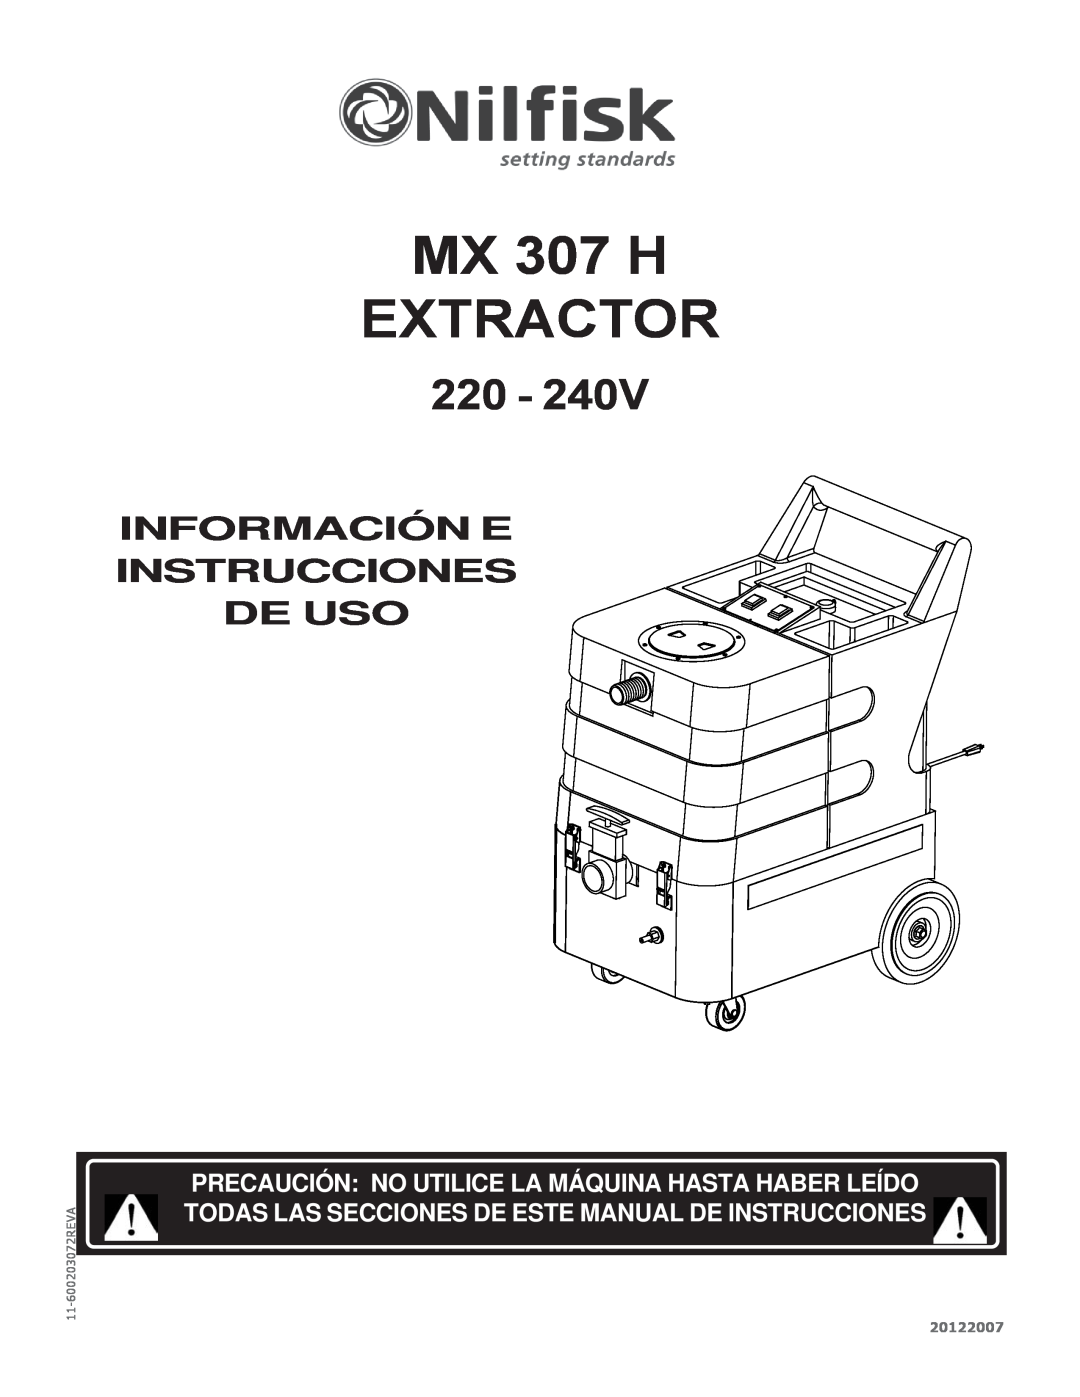 Nilfisk-Advance America MX 307 H EXTRACTOR, Información E Instrucciones De Uso, 20122007, 11-600203072REVA 